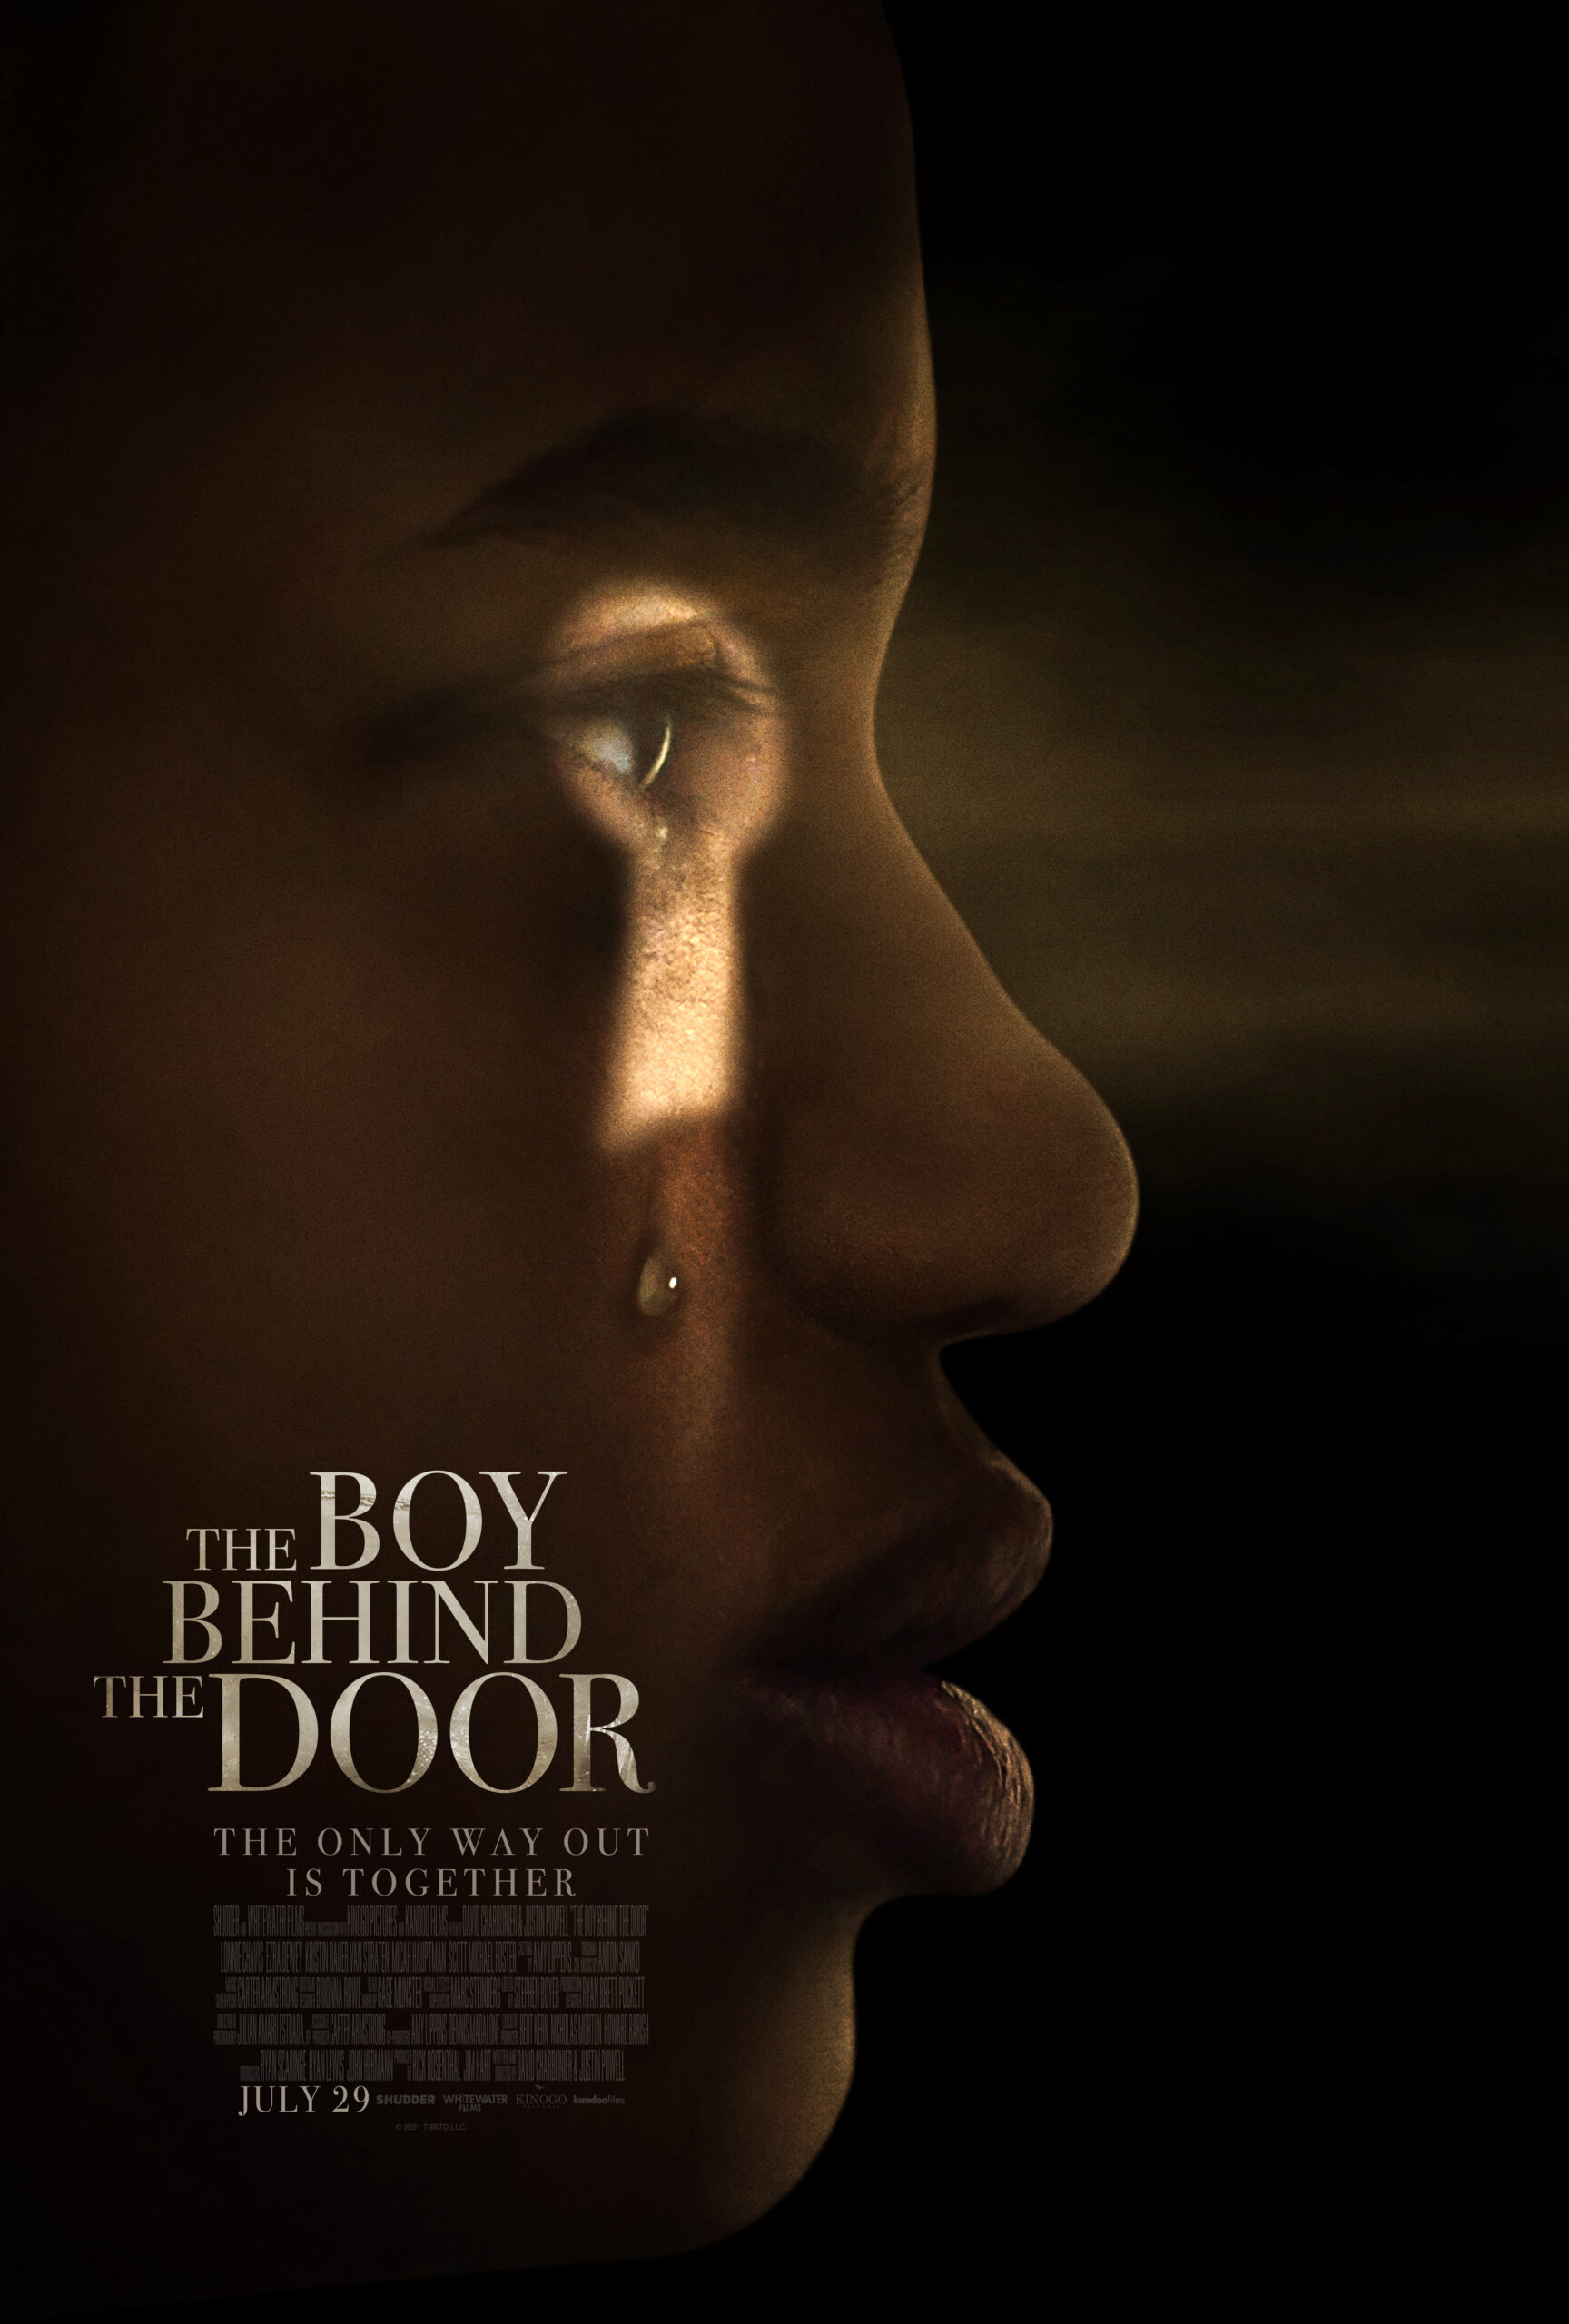 The Boy Behind the Door trailer